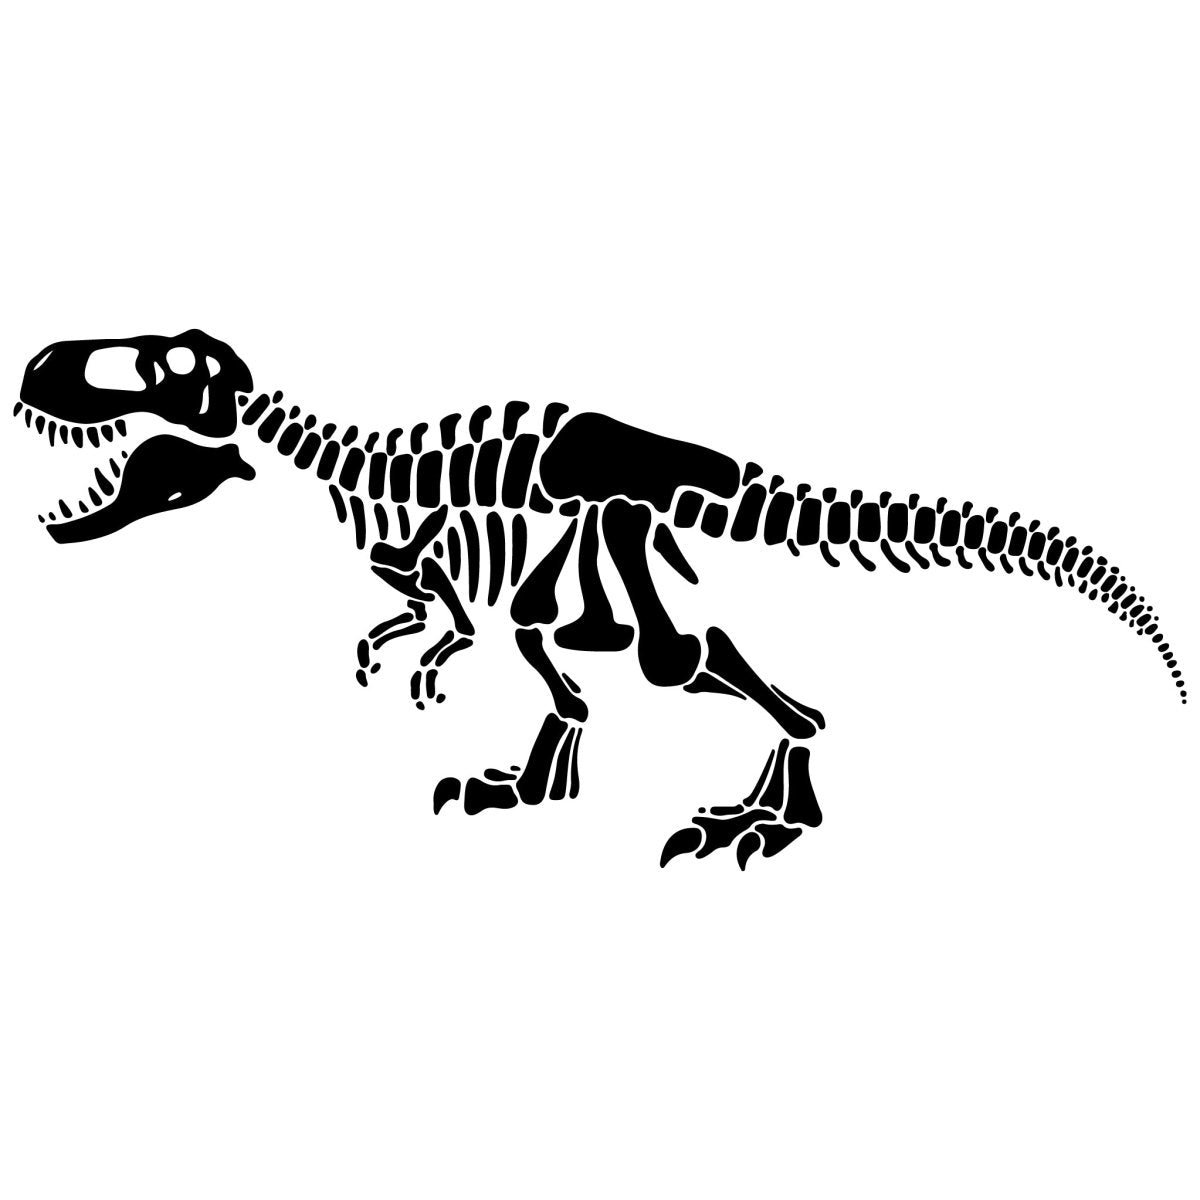 Wandtattoo Skelett Tyrannosaurus WT00000036 entdecken - Bild 1